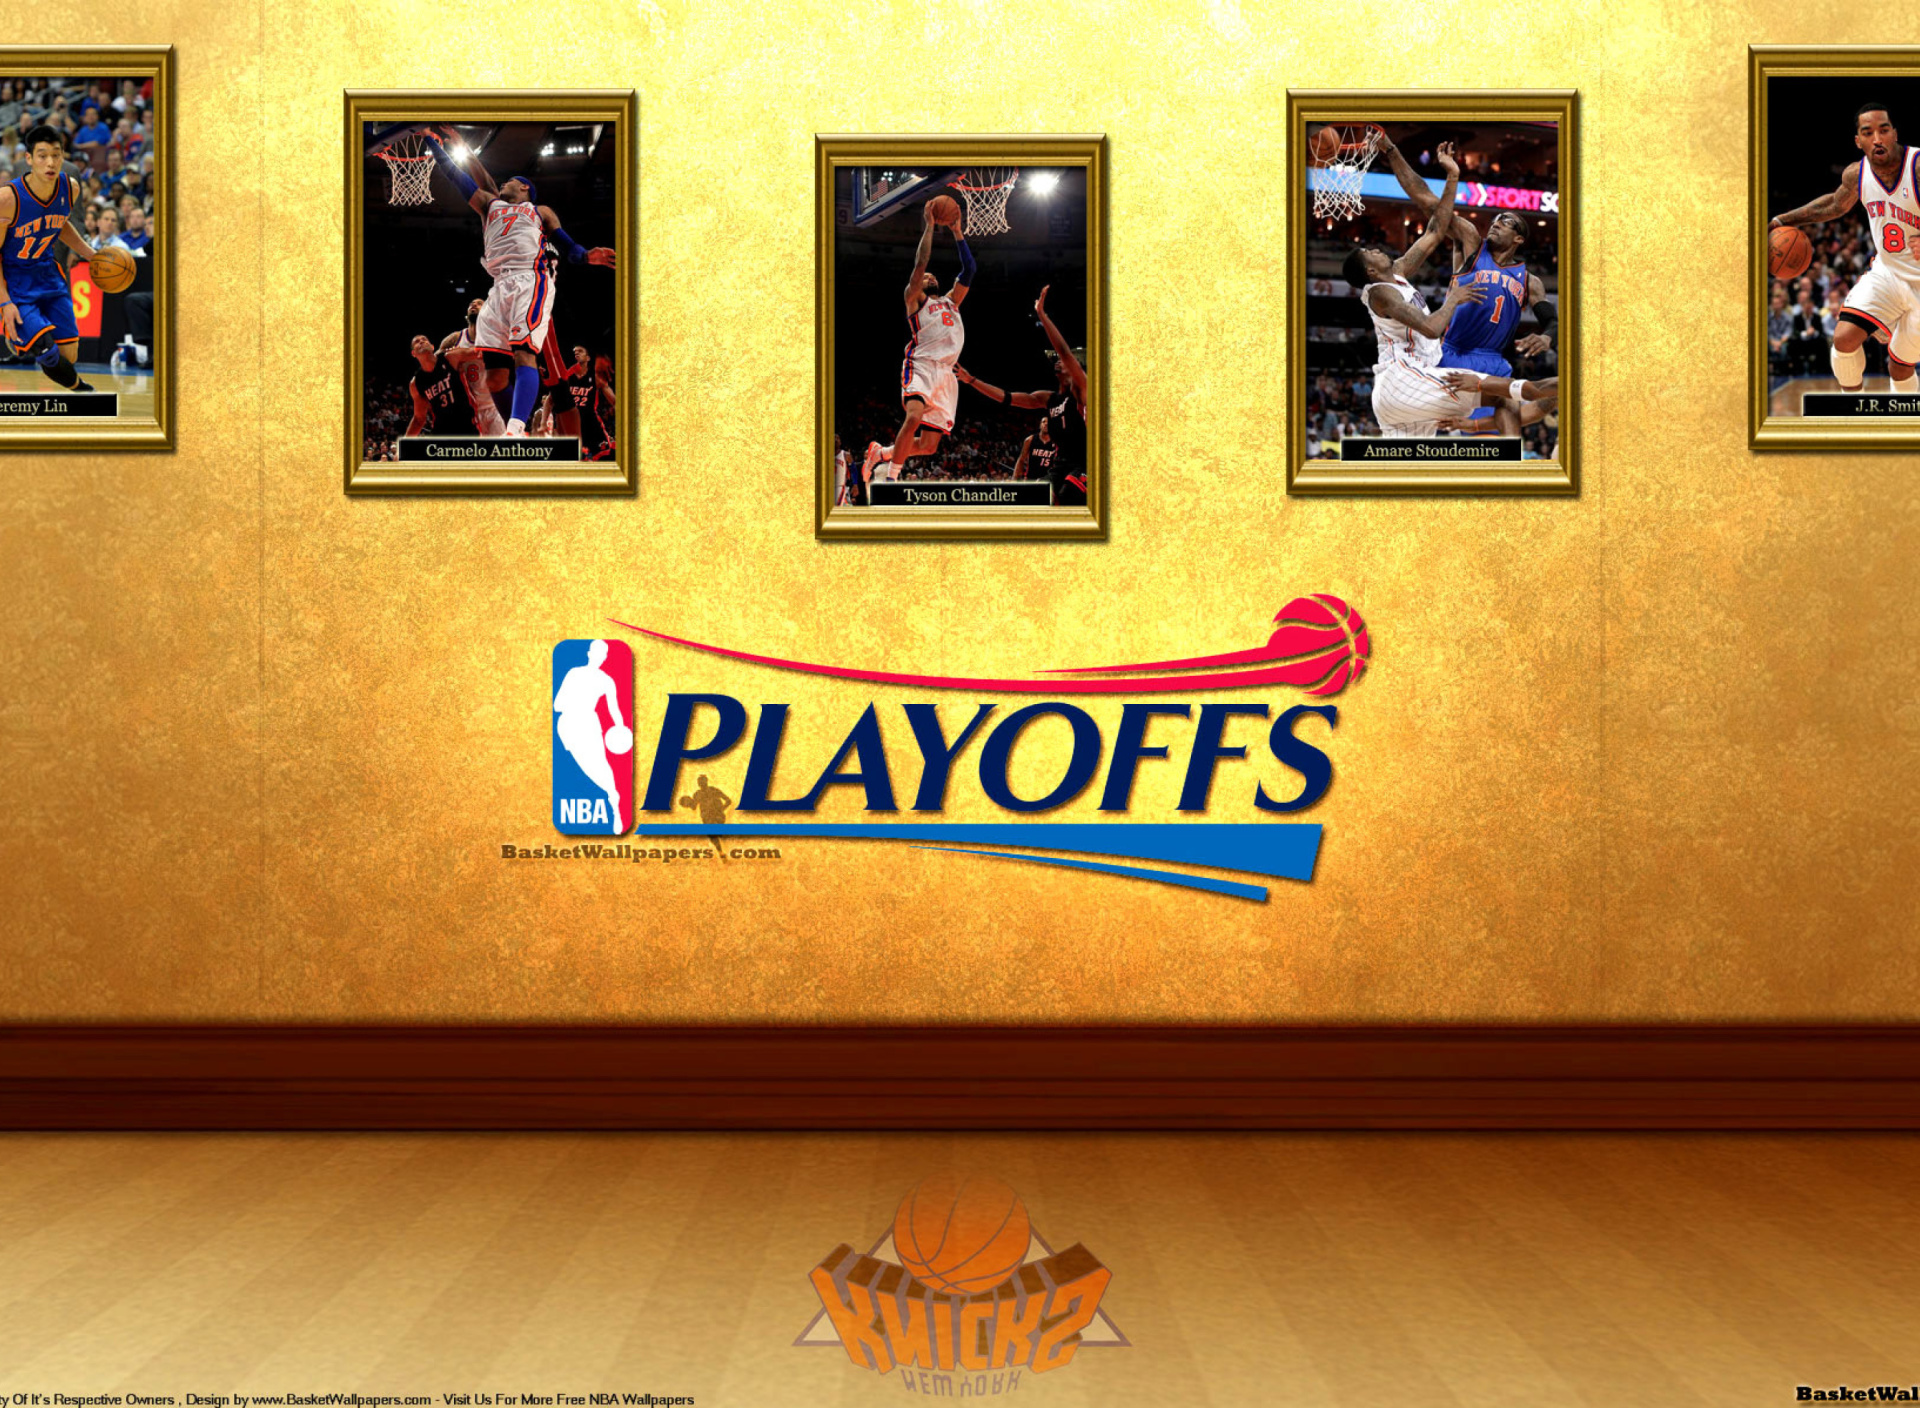 New York Knicks NBA Playoffs wallpaper 1920x1408